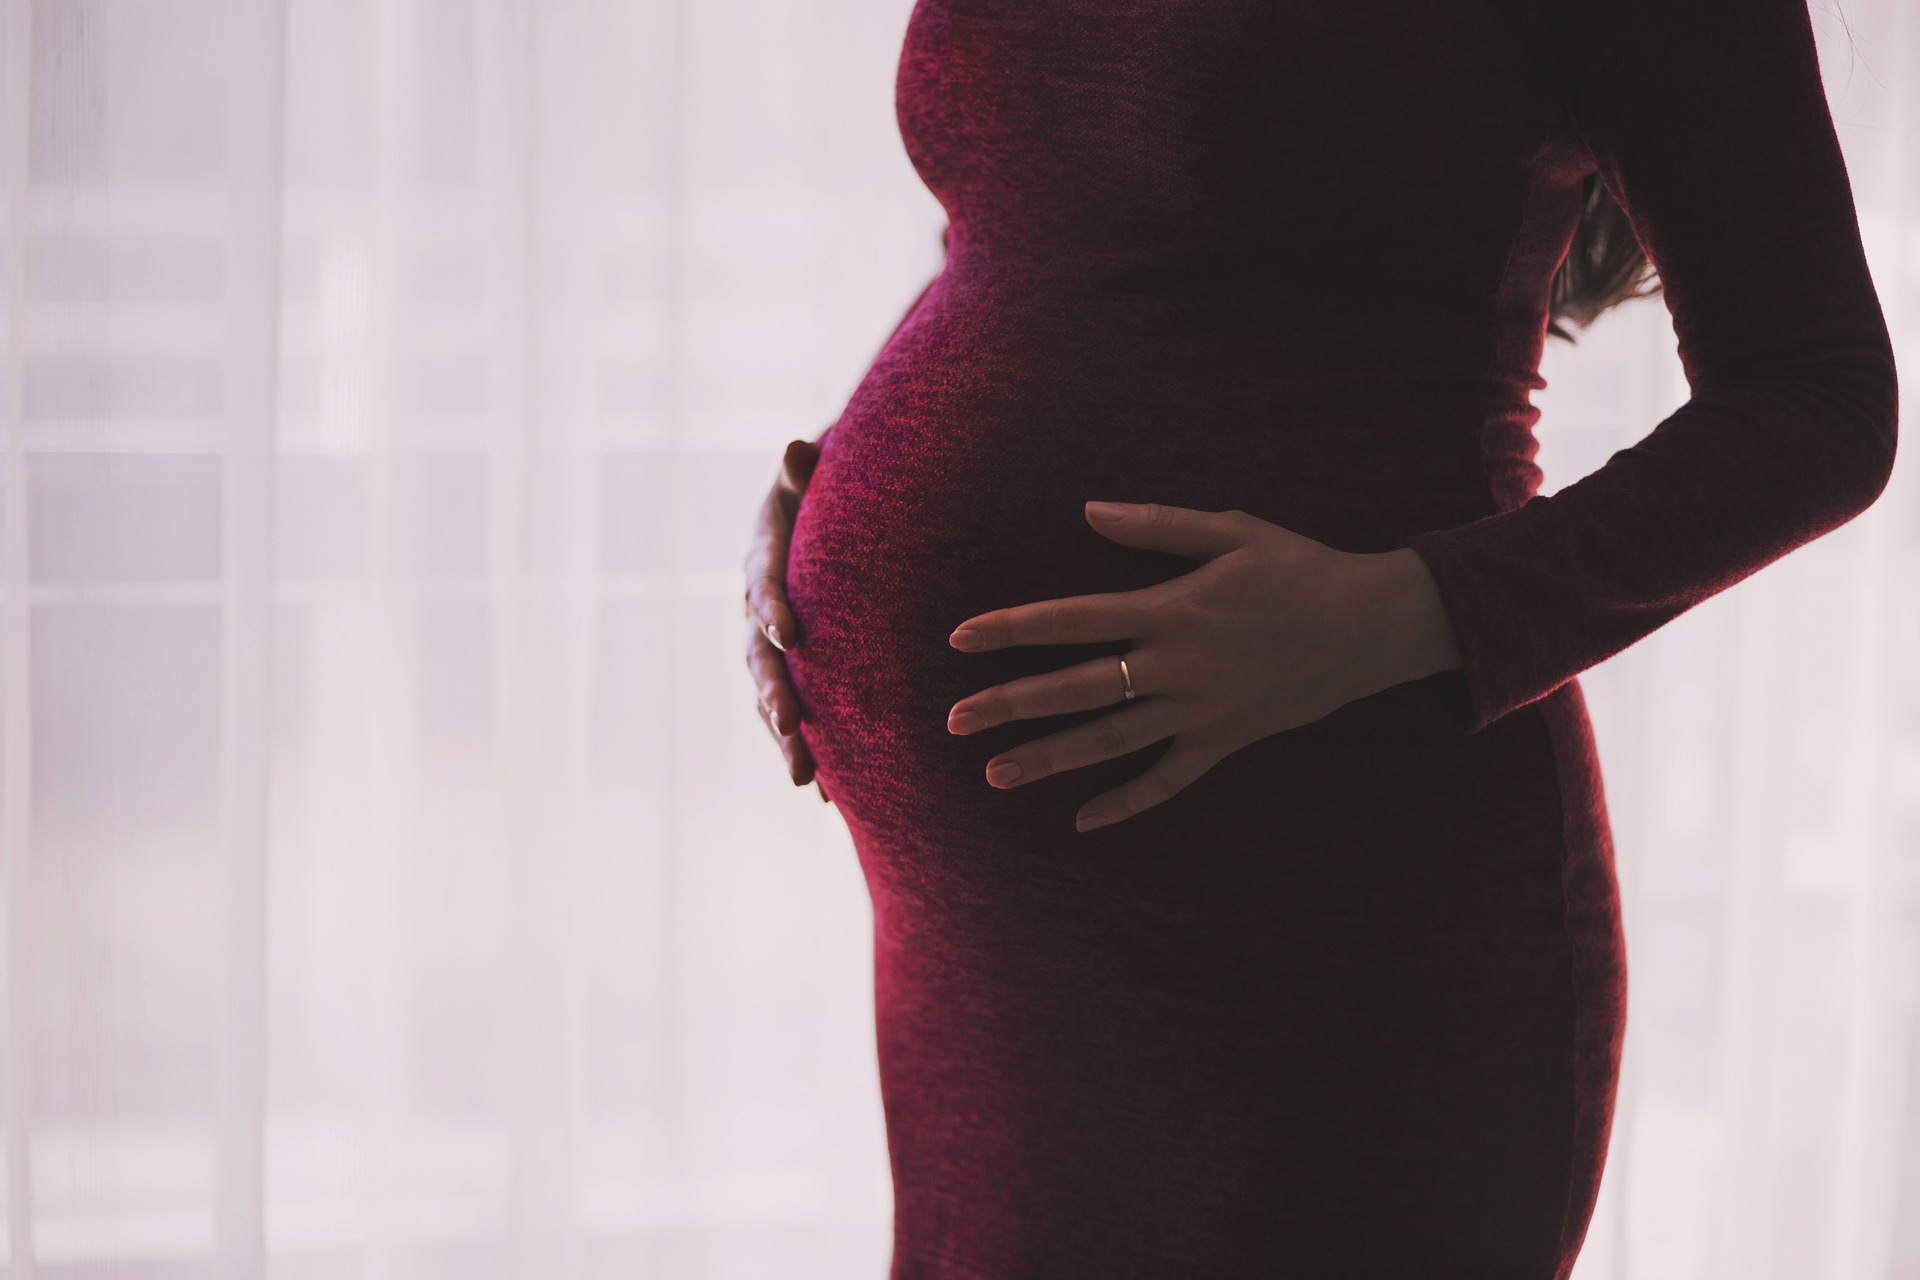 Maternità, arrivano i chiarimenti sulle deroghe alla normativa